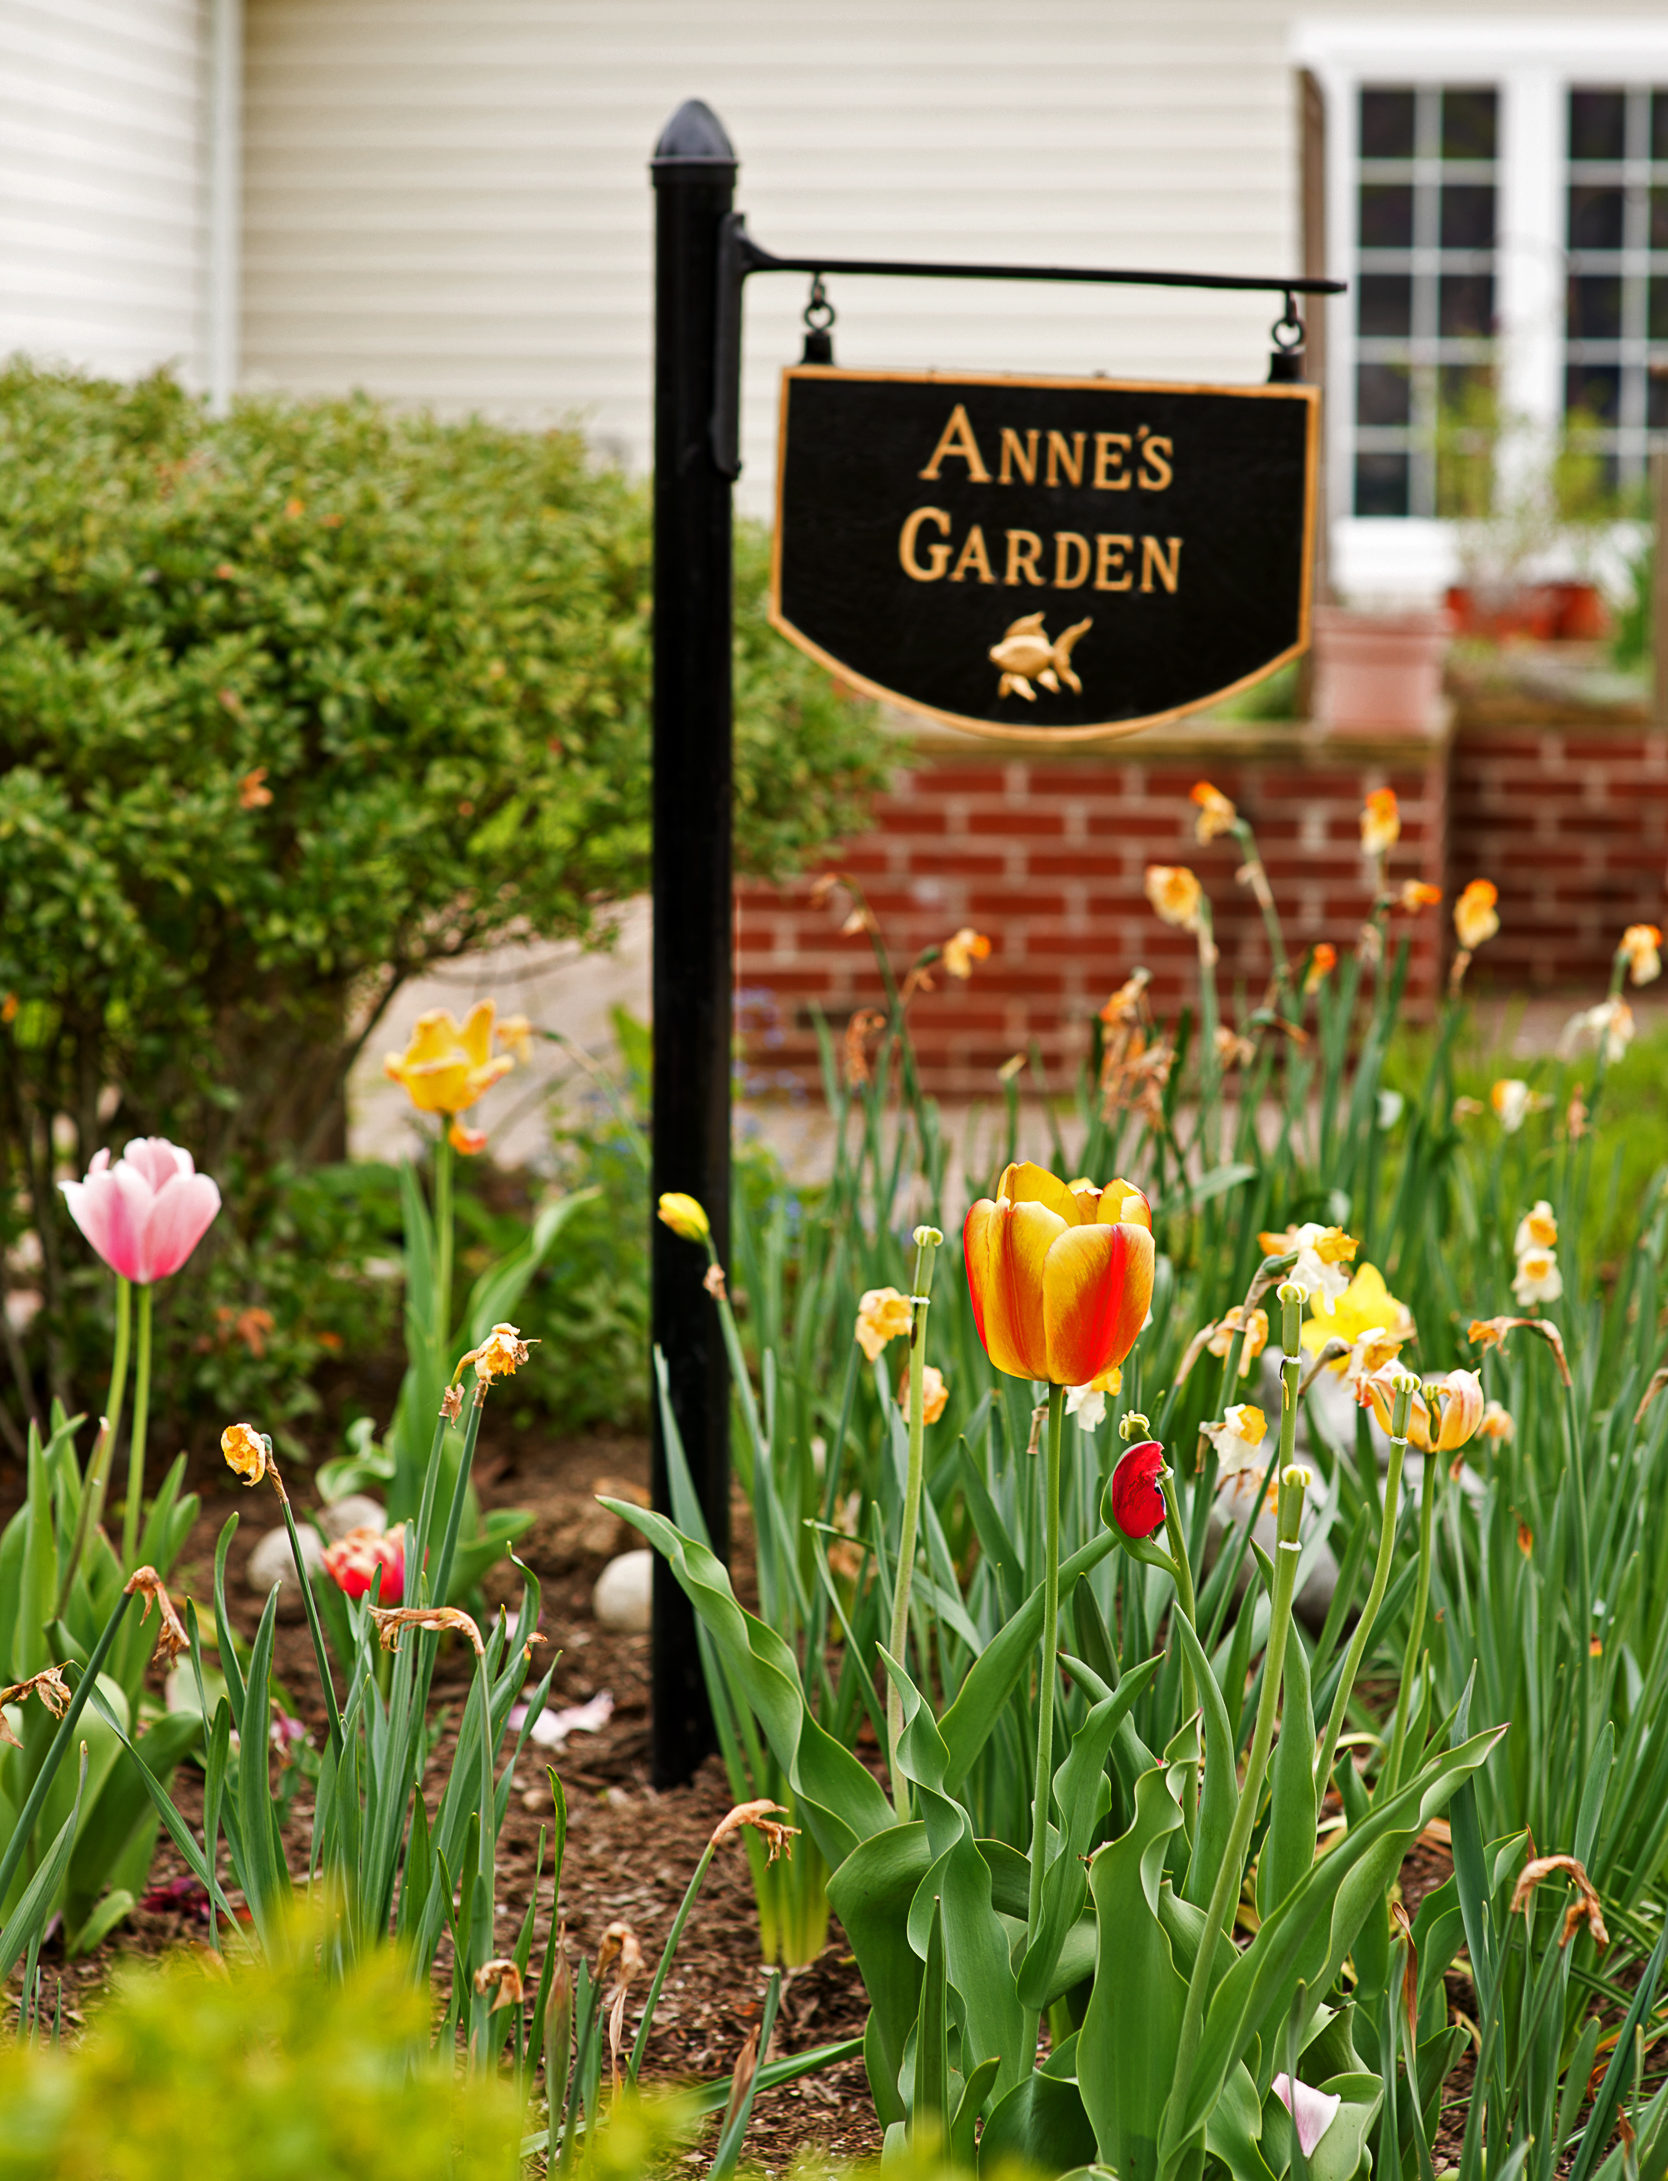 anne's garden sign